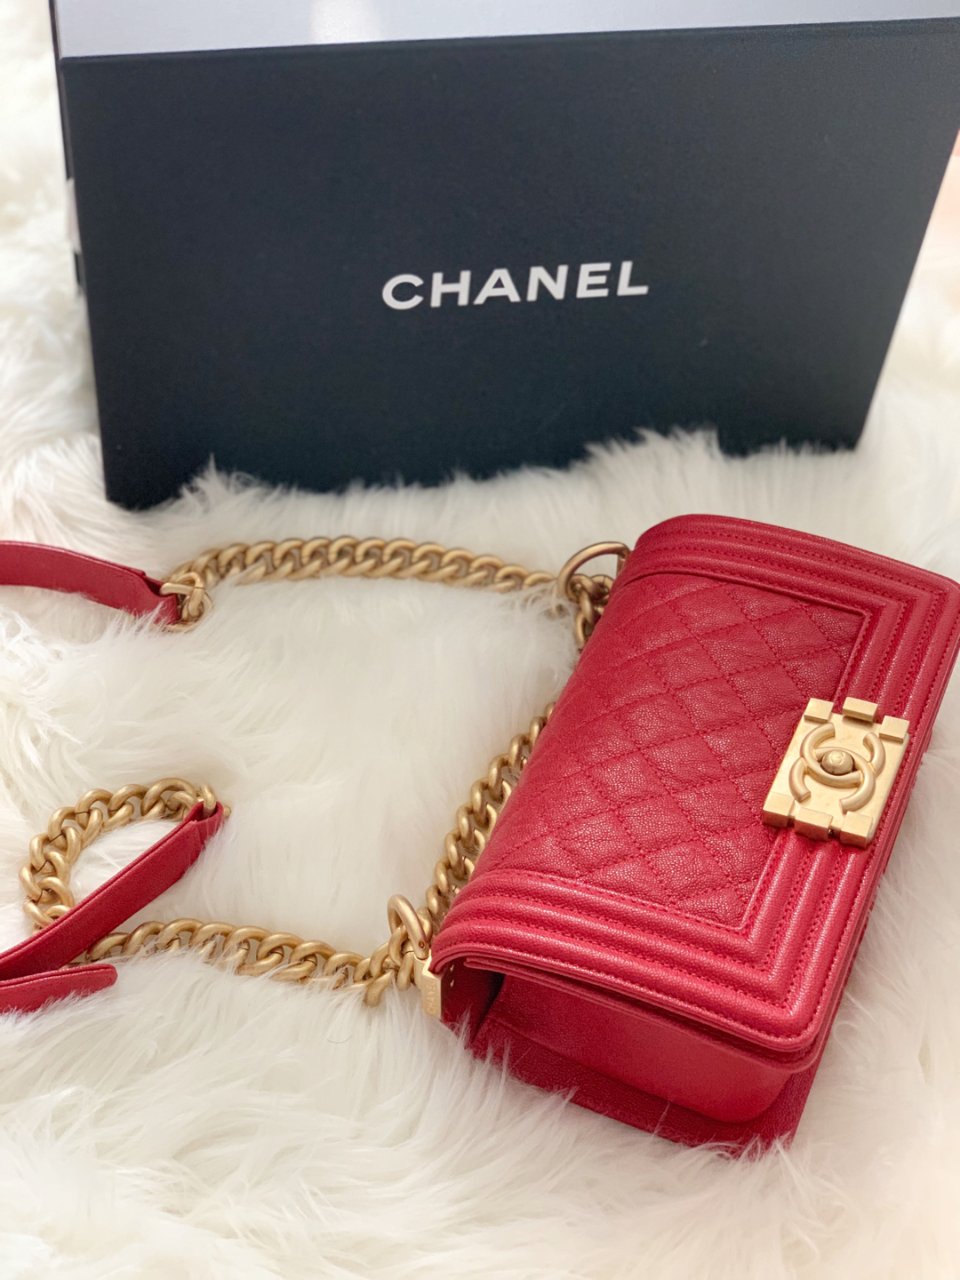 我的Chanel包,小香控,Chanel 香奈儿